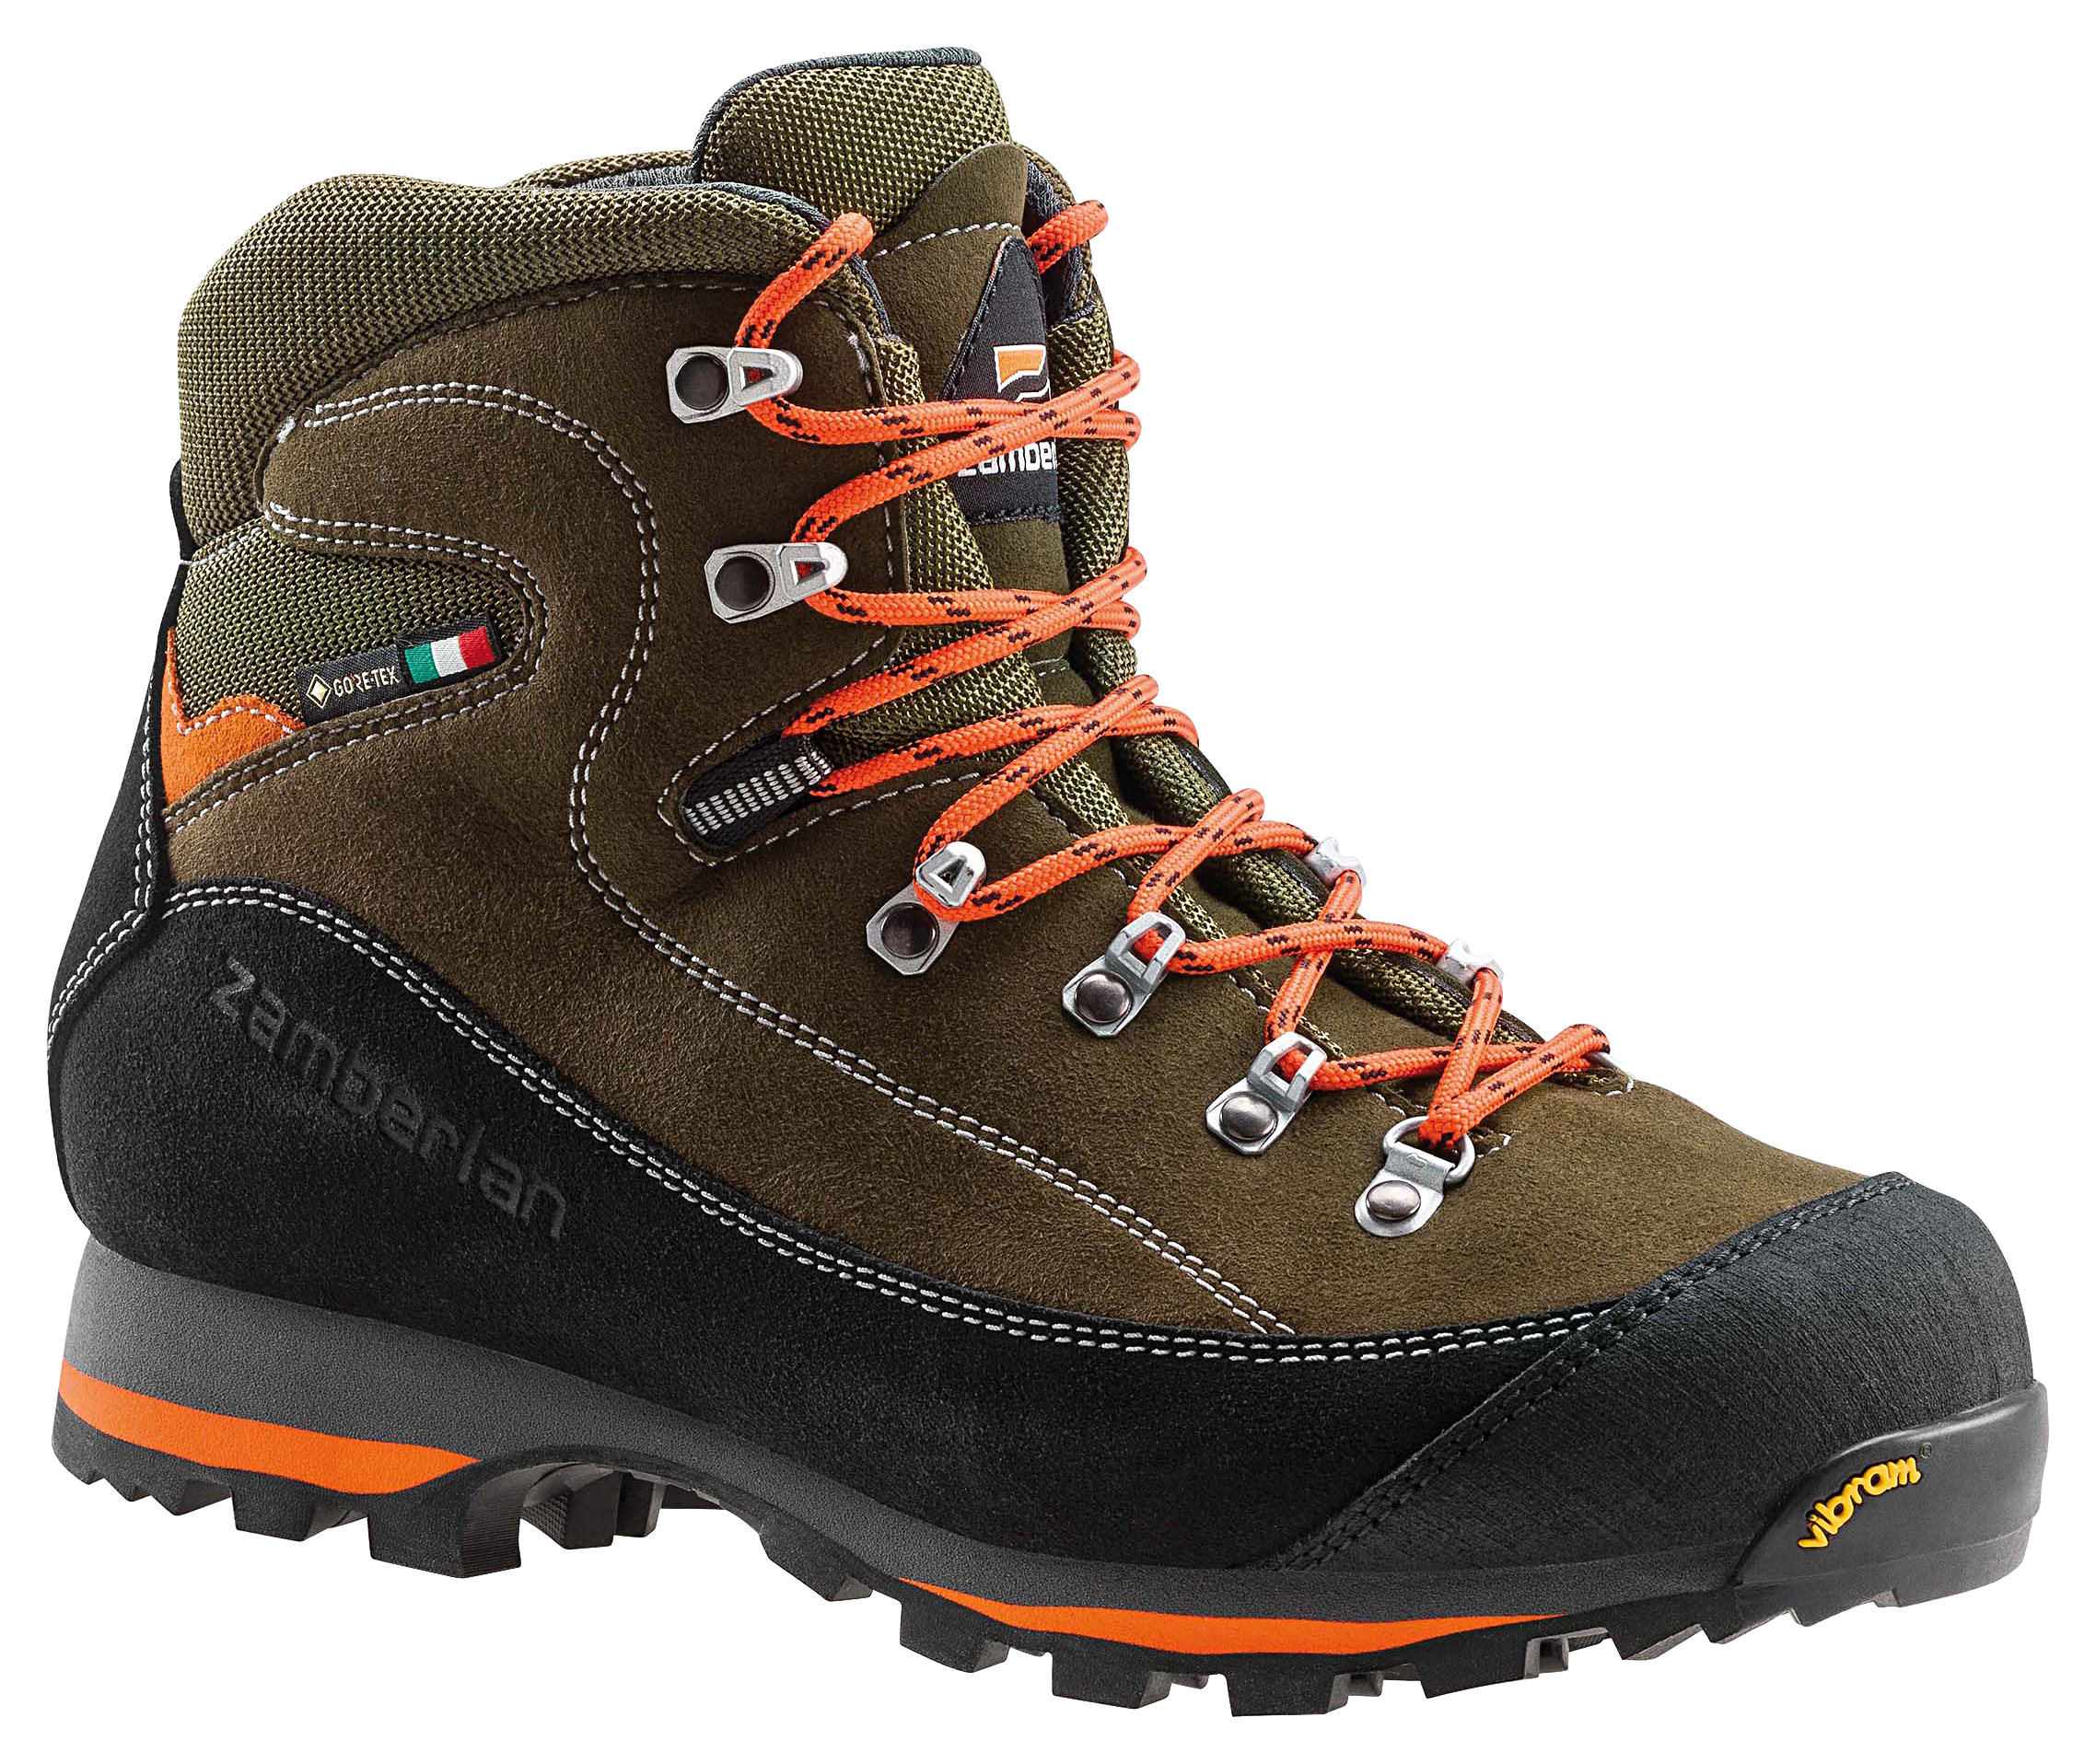 Zamberlan 700 Sierra GTX Waterproof Hunting Boots for Men - Forest - 11M